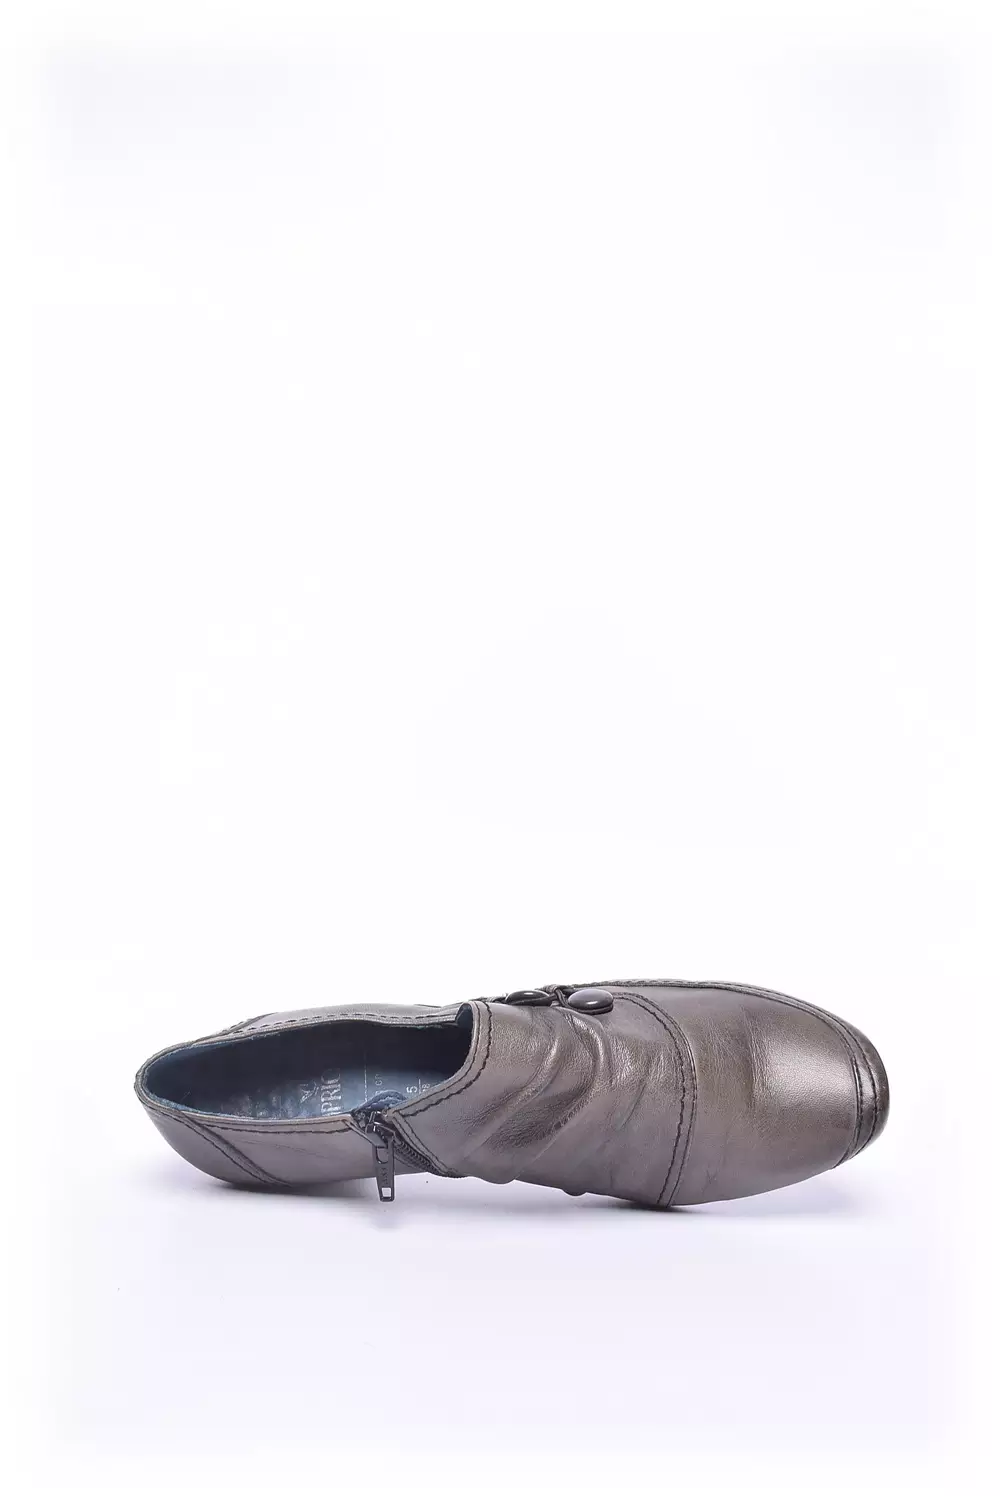 Pantofi dama  [4]